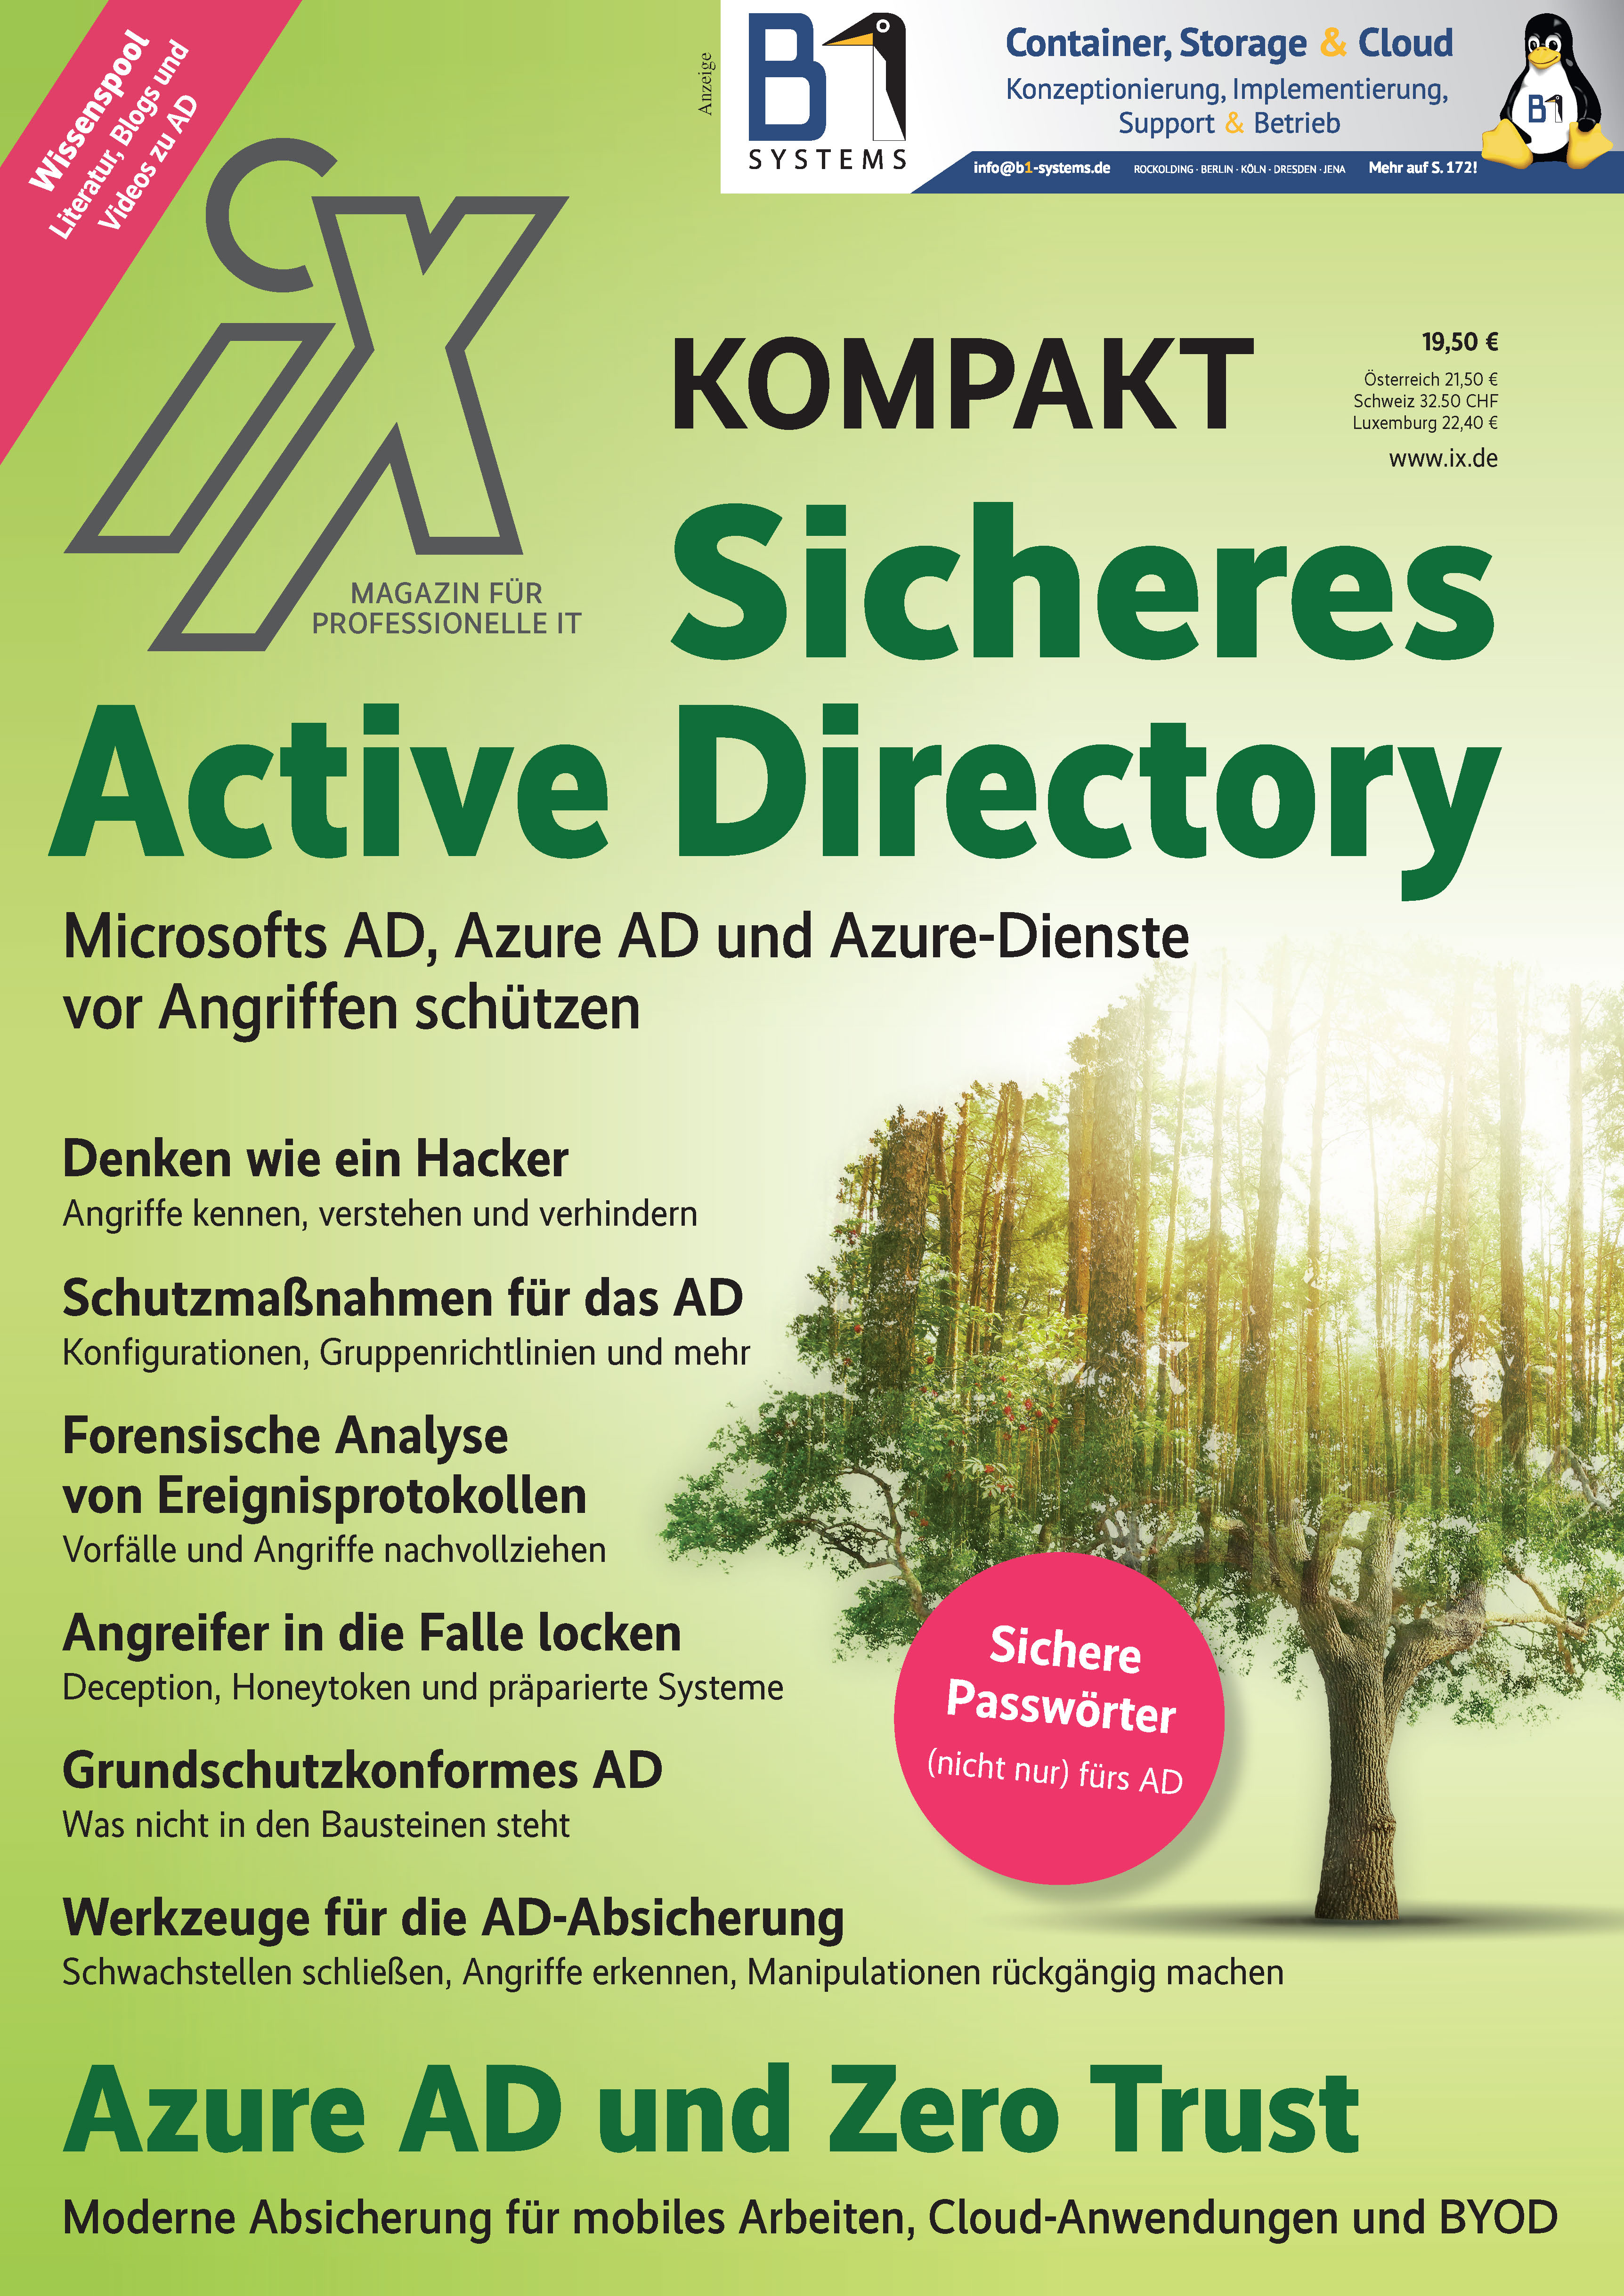 iX kompakt Sicheres Active Directory